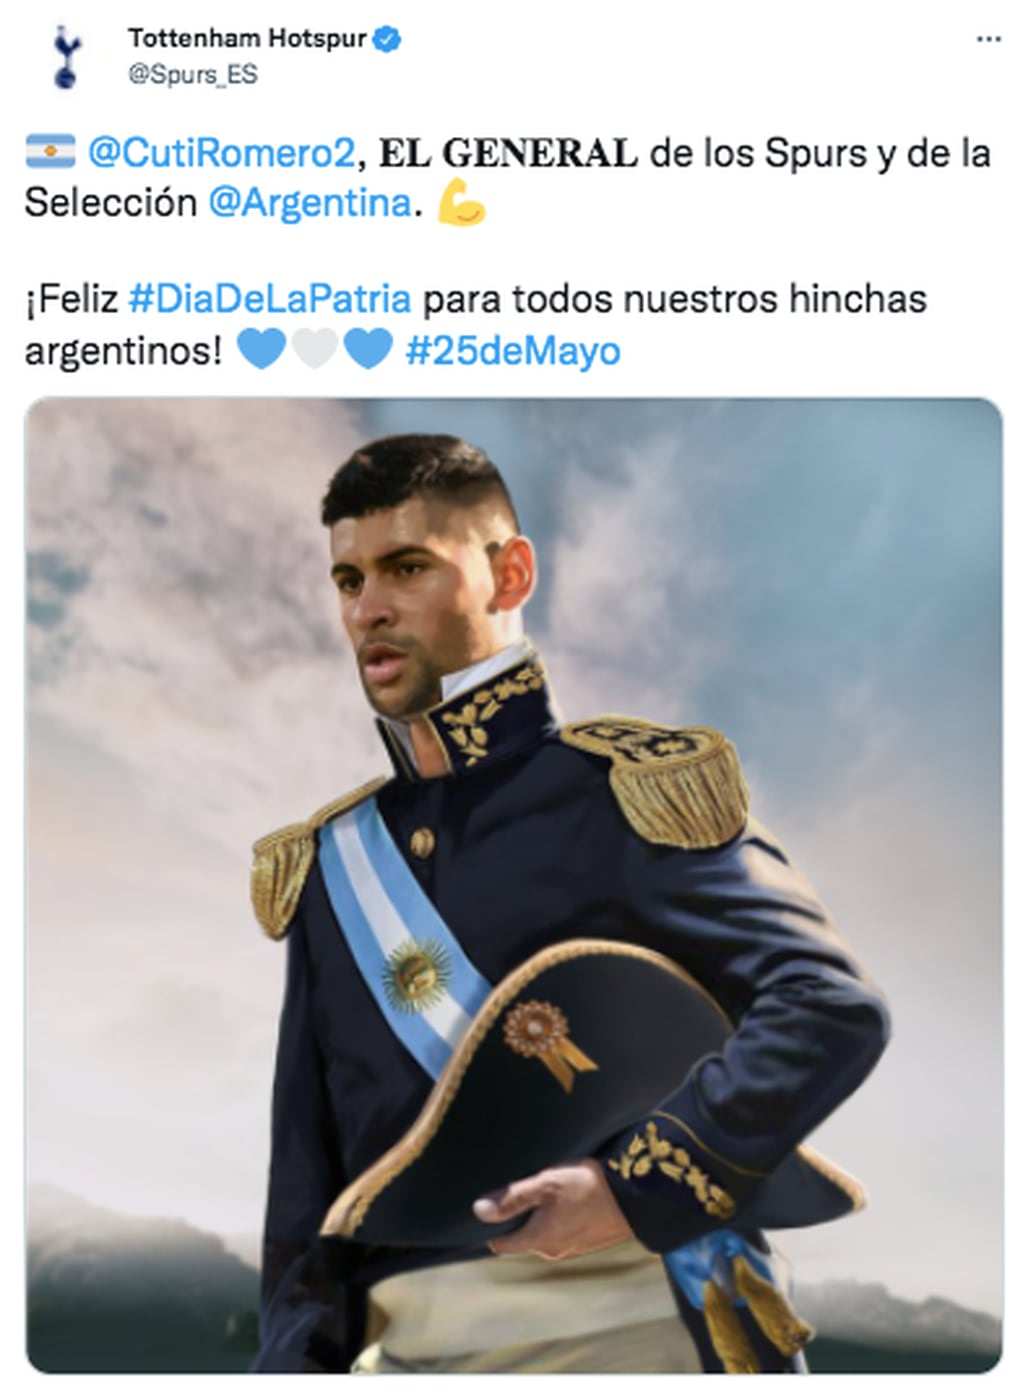 Cuti Romero, el "General" de la Selección Argentina y el Tottenham.